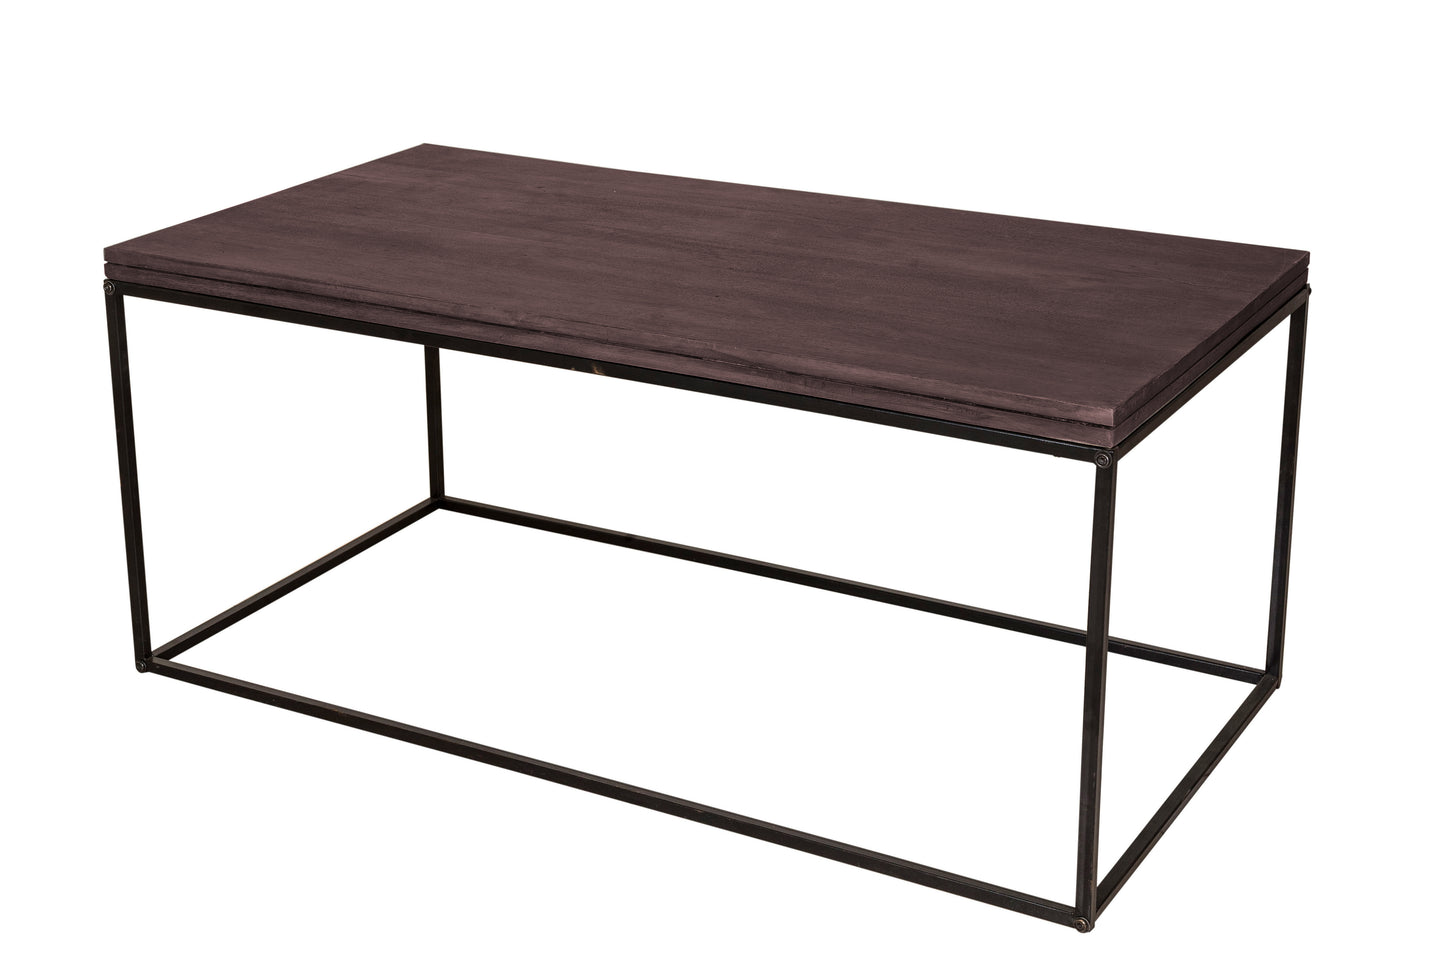 Mackay Bed Side Table - metallikafurniture.com